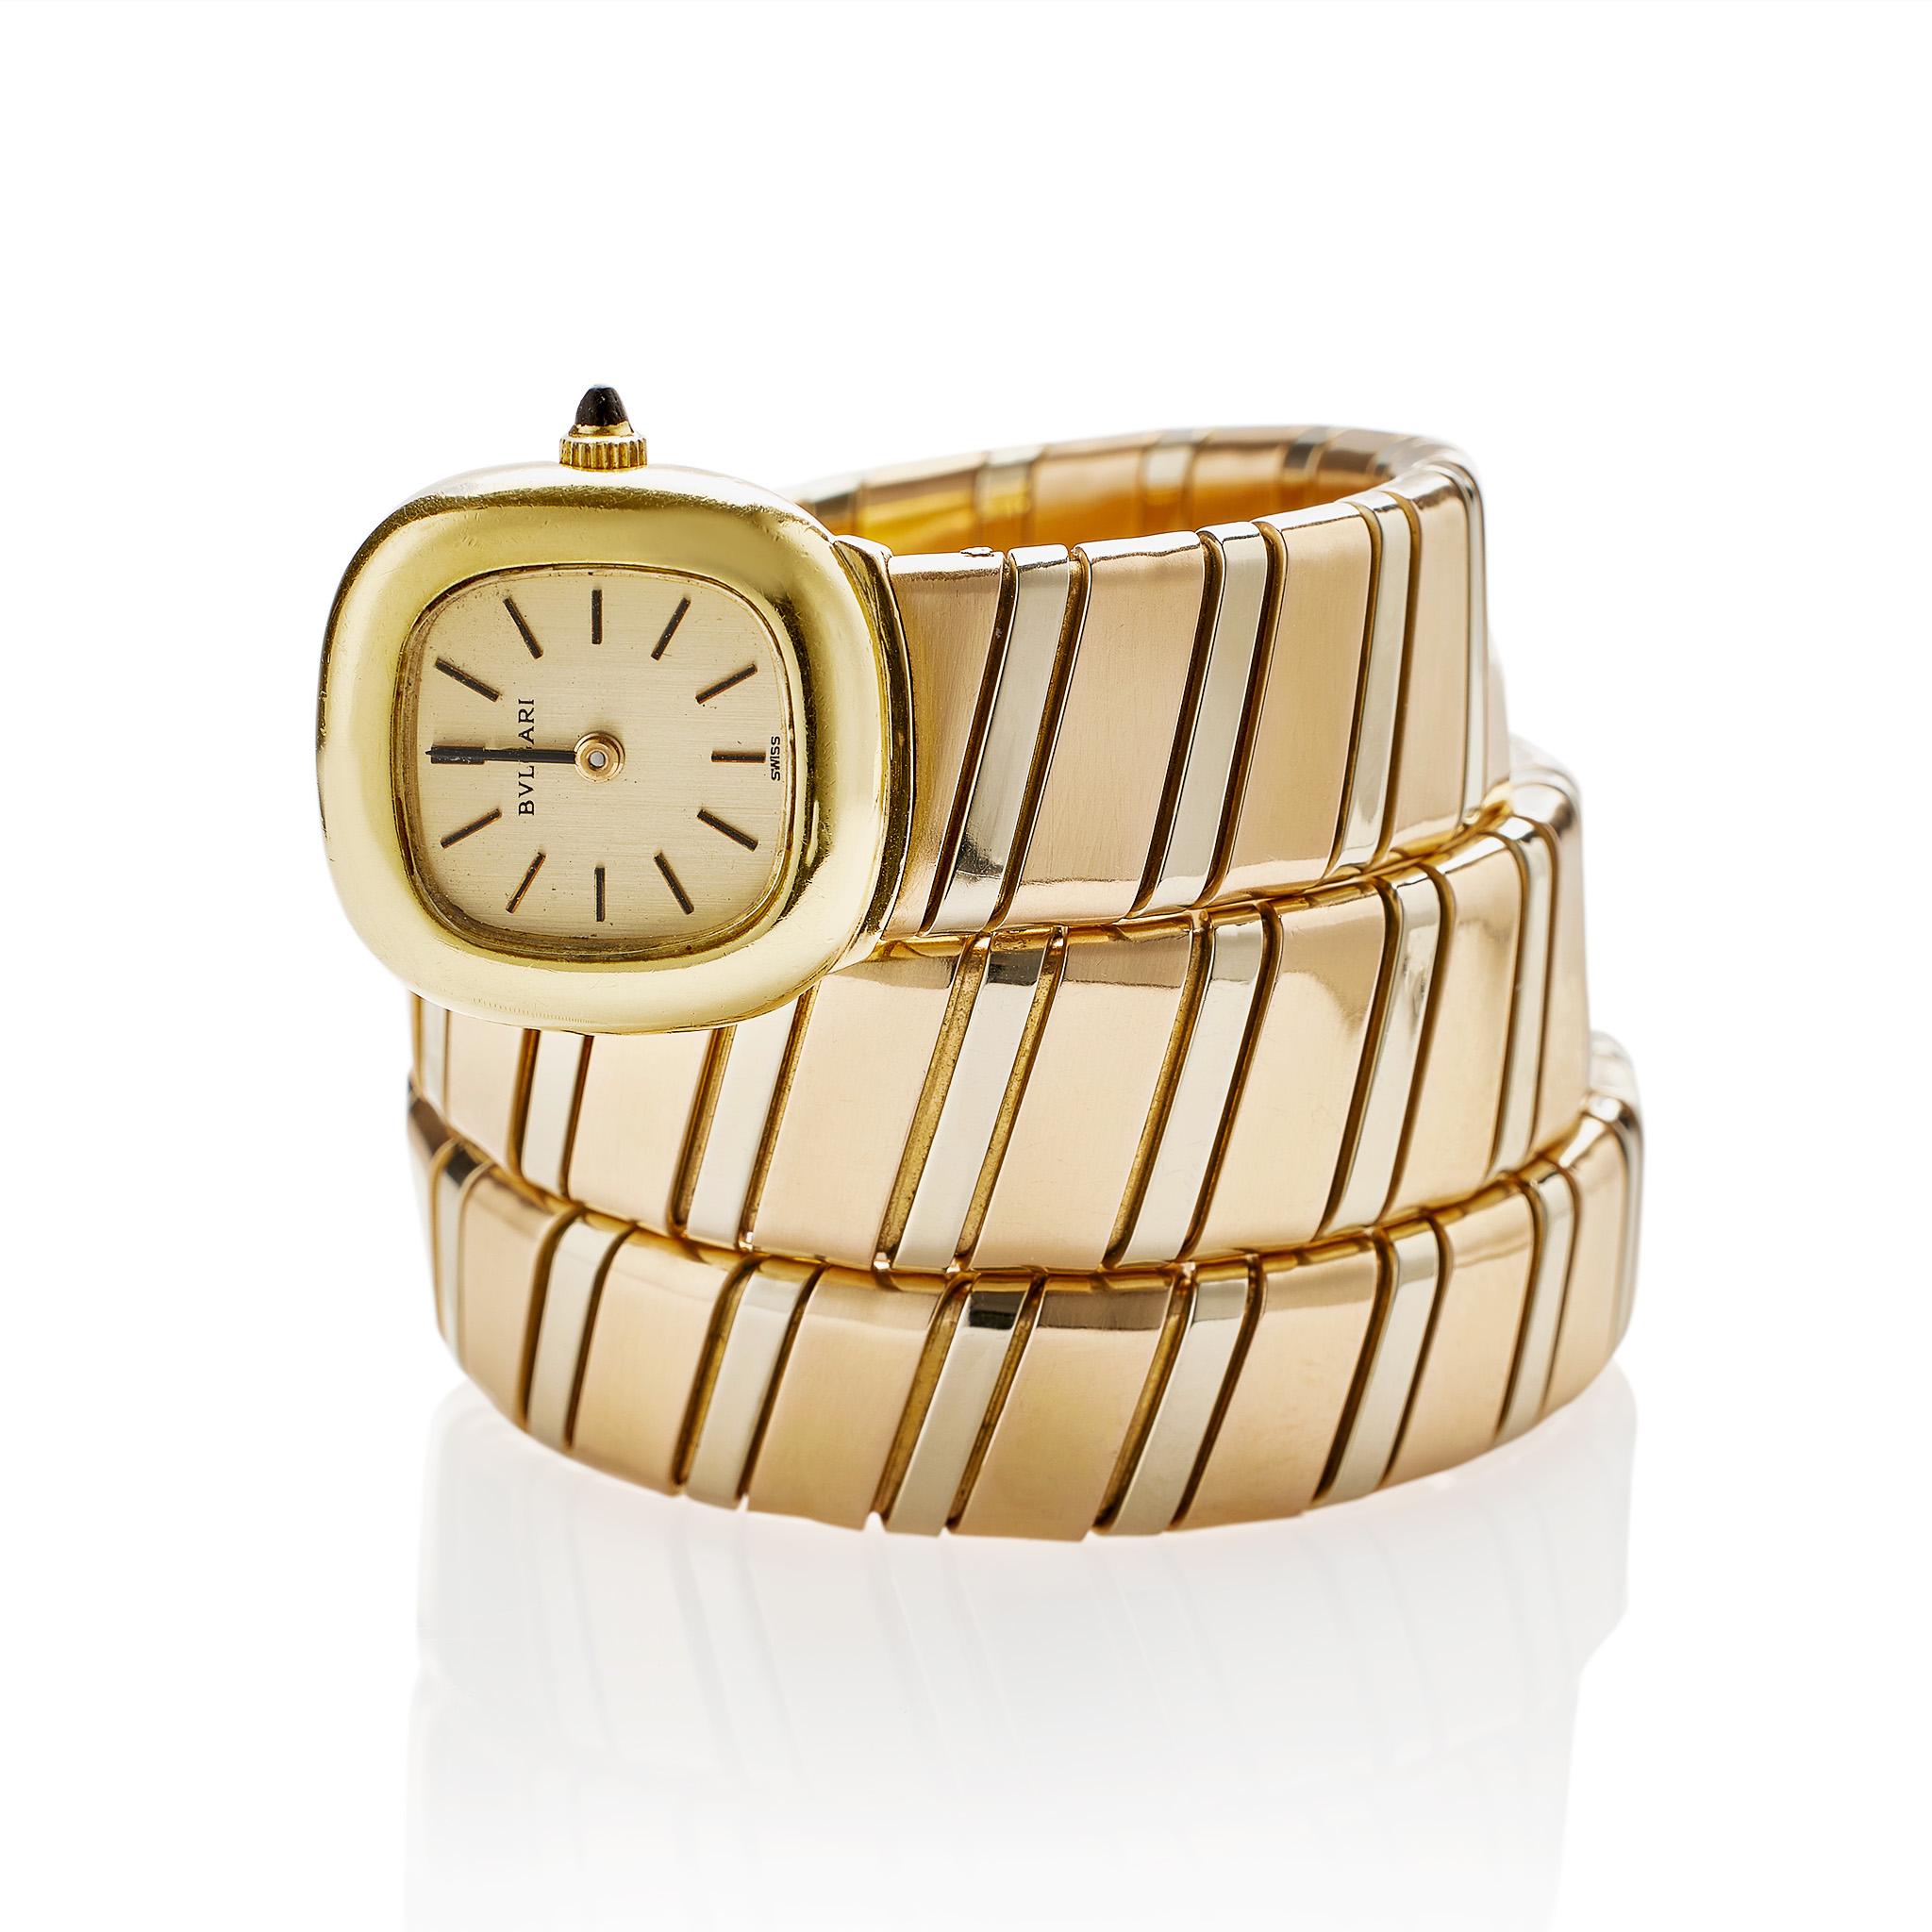 Diese Bulgari Tubogas Serpenti Armbanduhr mit Automatikwerk wurde um 1970 kreiert und besteht aus dreifarbigem 18-karätigem Gold. Sie ist als stilisierte Schlange mit einem flexiblen, gewundenen Körper aus Rosé- und Weißgold-Tubogasgliedern